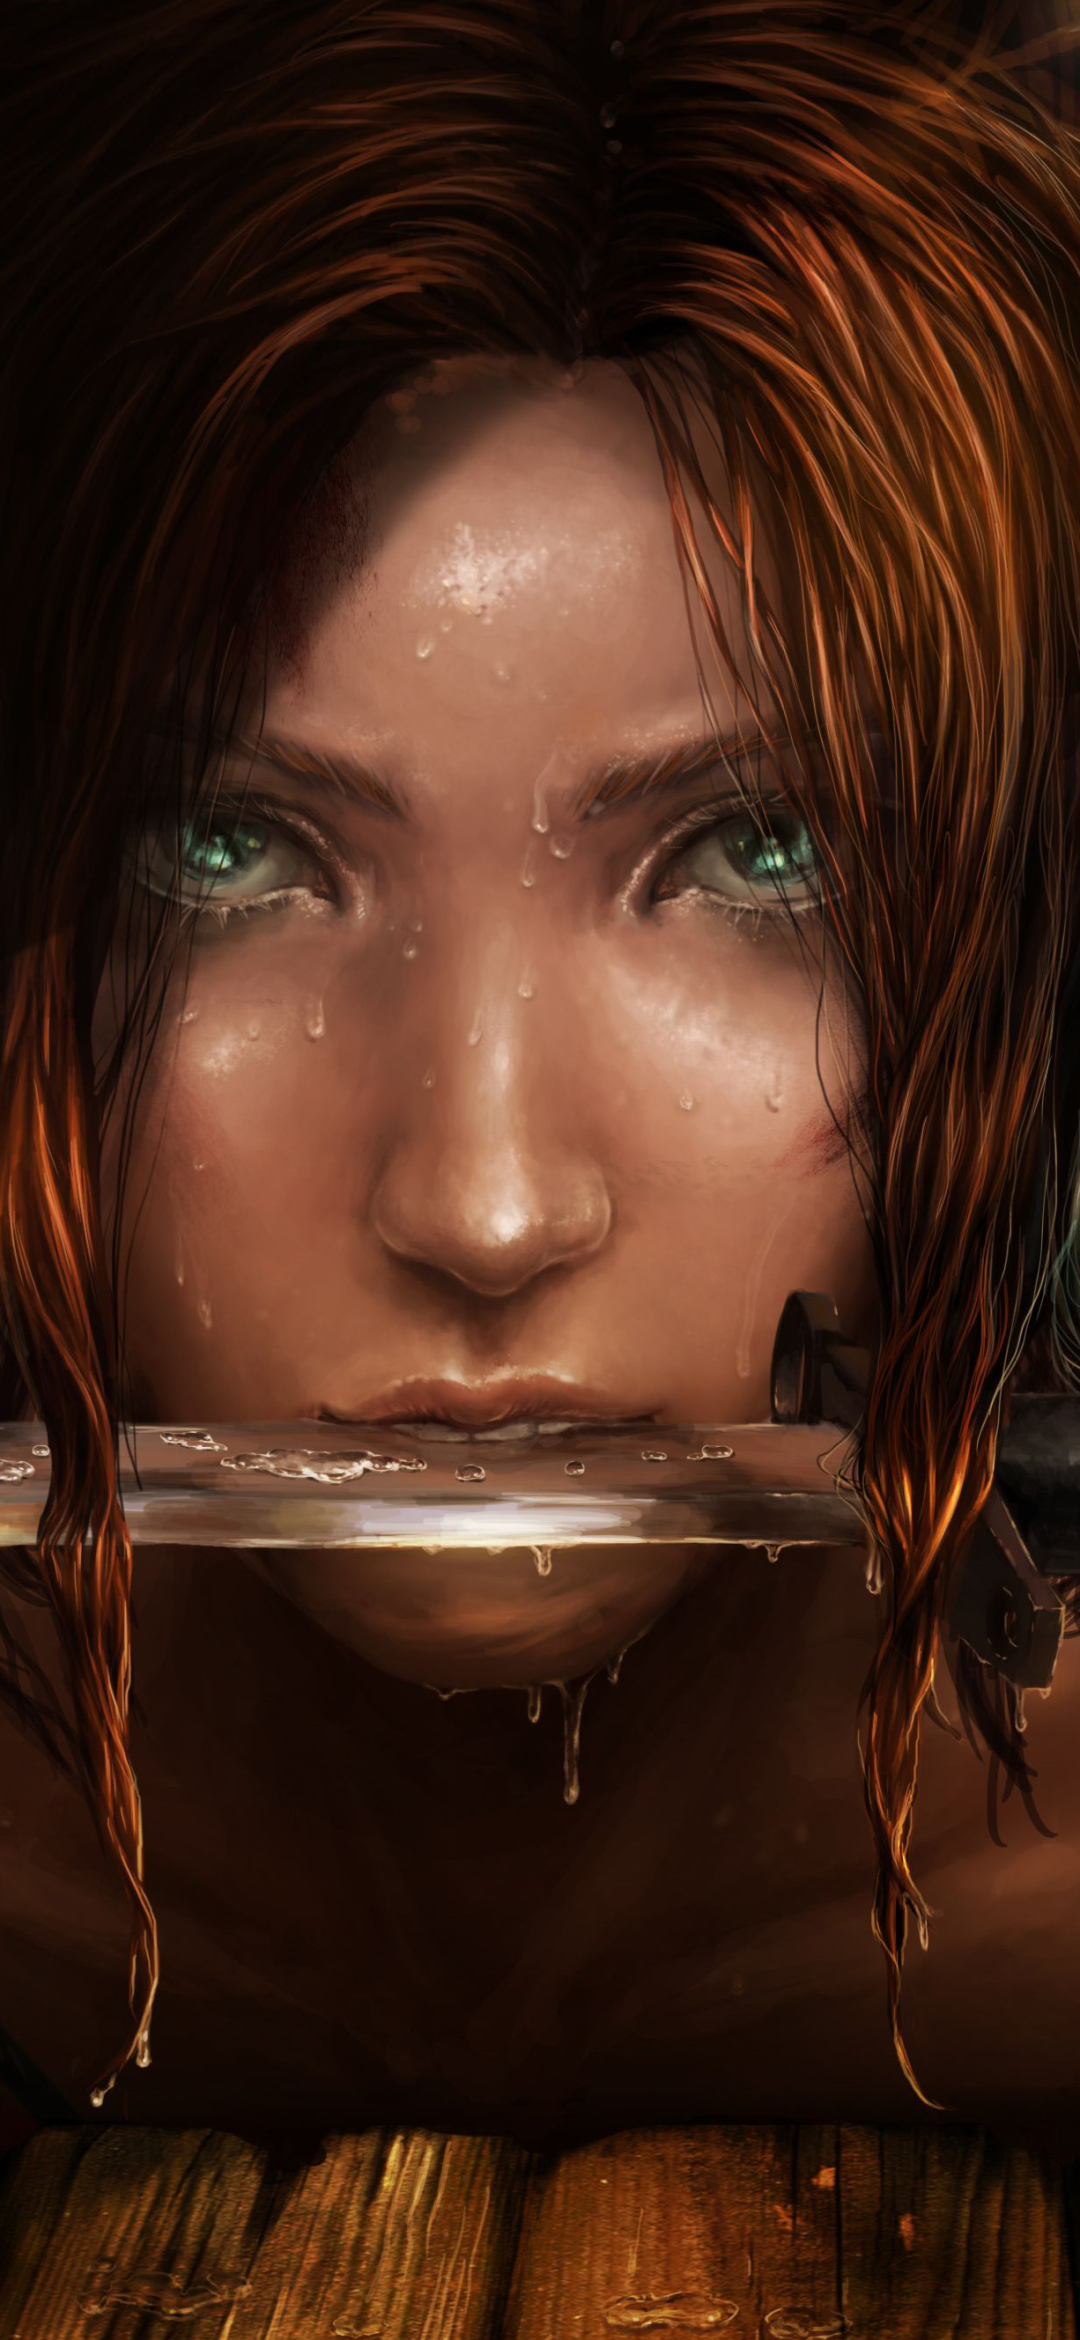 Descarga gratuita de fondo de pantalla para móvil de Tomb Raider, Cara, Cuchillo, Videojuego, Cabello Rojo, Ojos Aguamarina, Lara Croft.